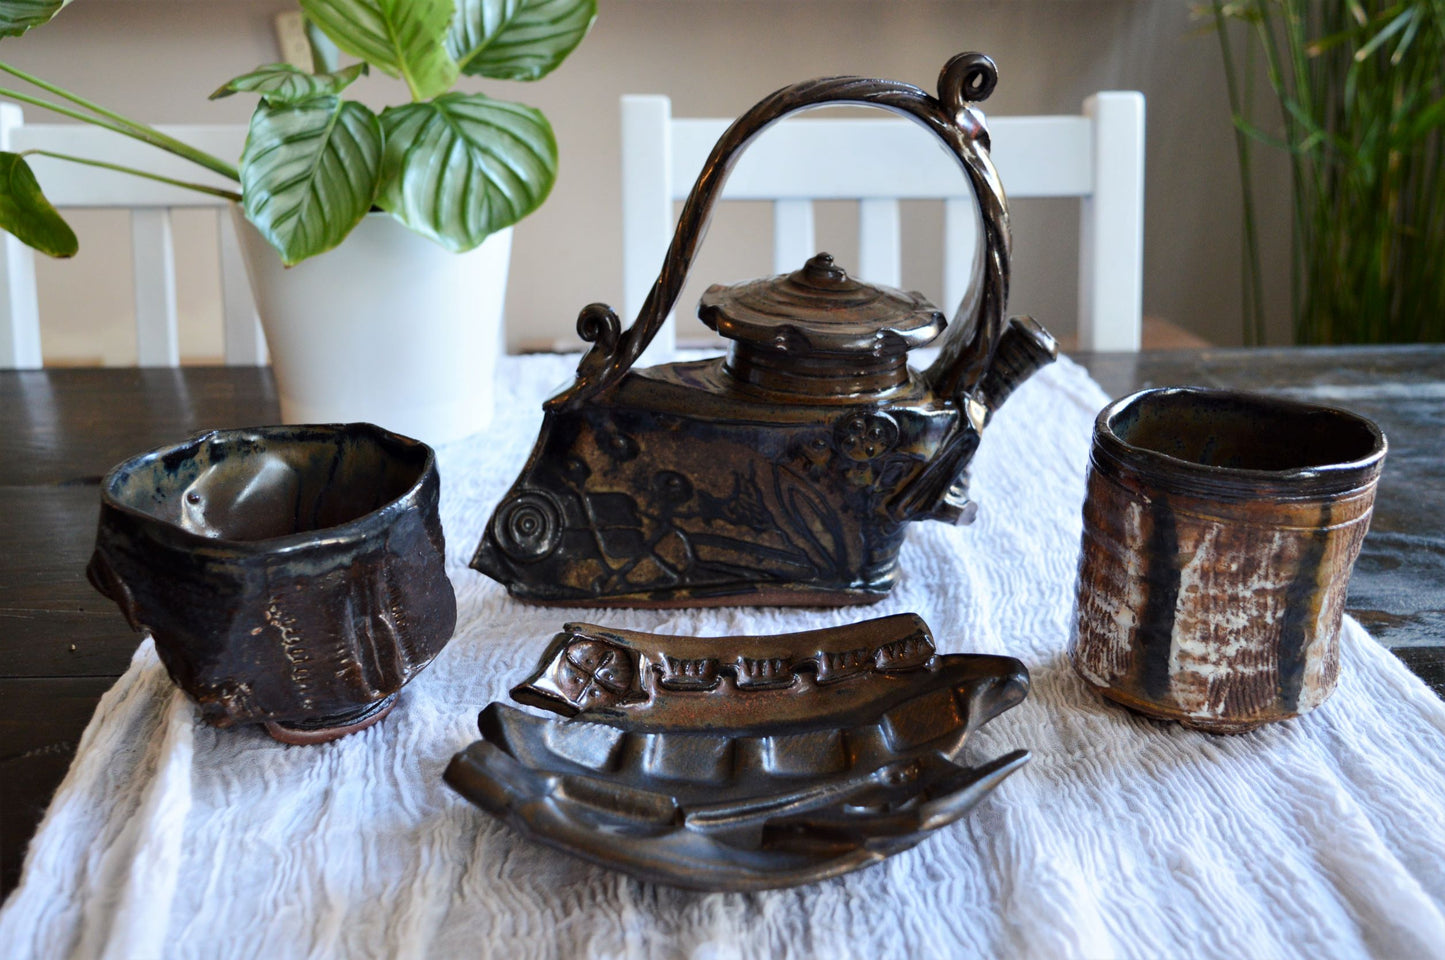 Tea Set - Metal Works Wayne Cardinalli